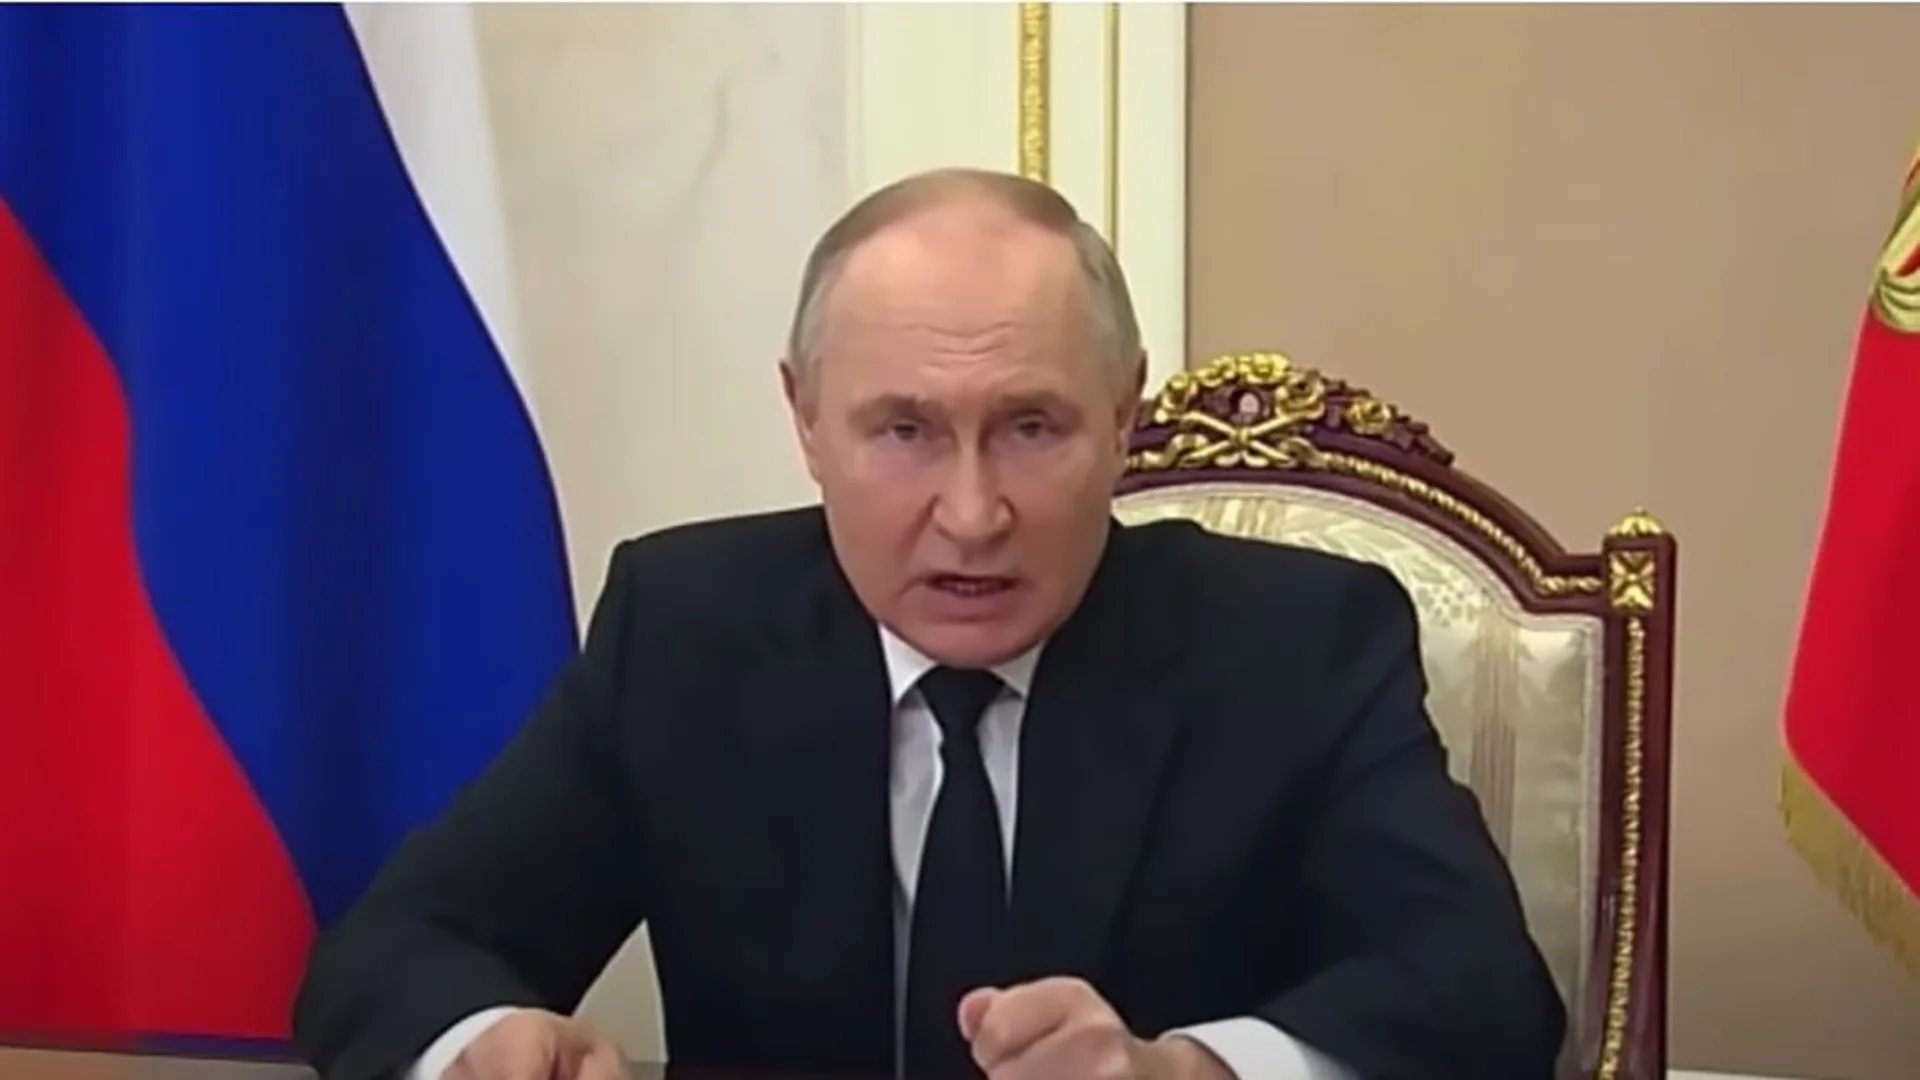 Путин се държи като съпруг, хванат от жена си с любовница: Руски анализатор